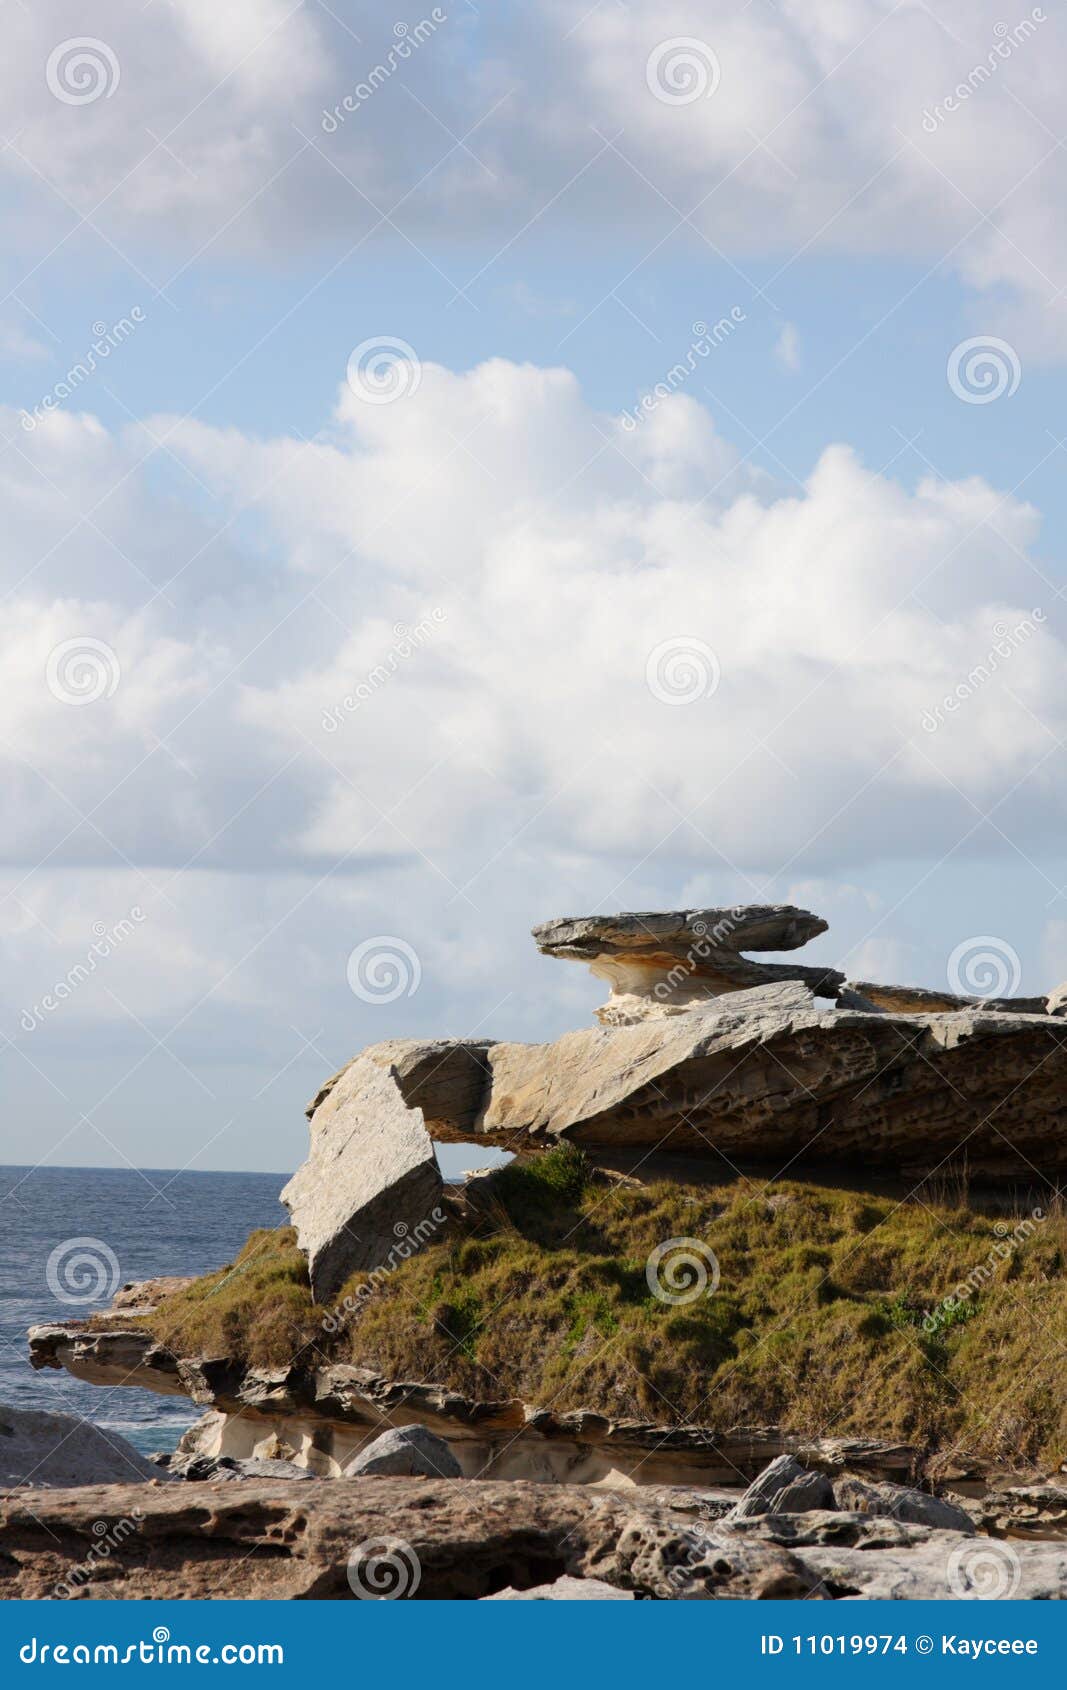 coastal rock outcrop